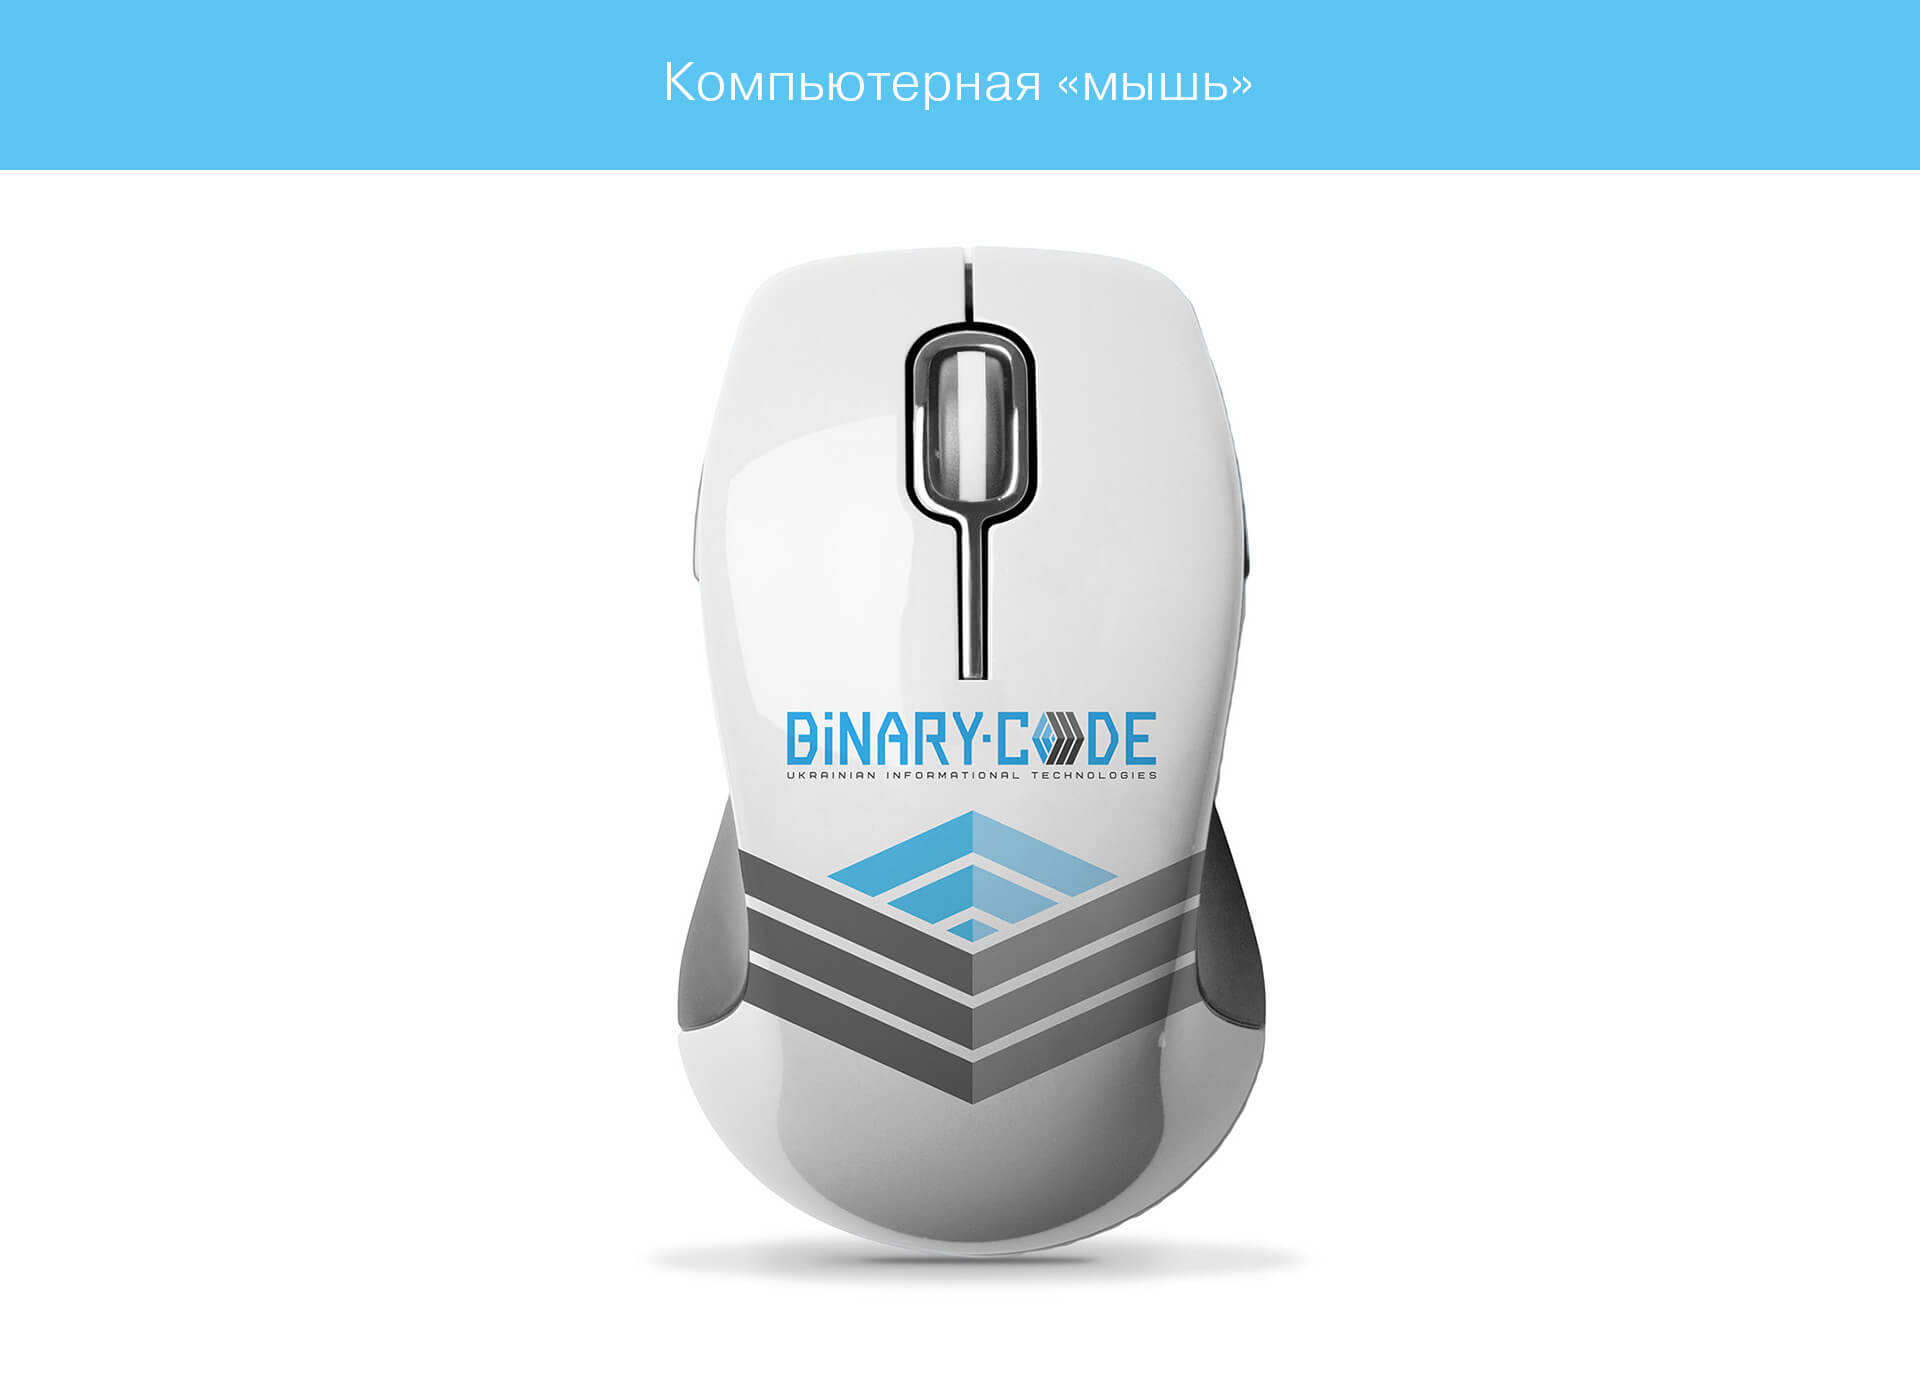 prokochuk_irina_binary-code_13_